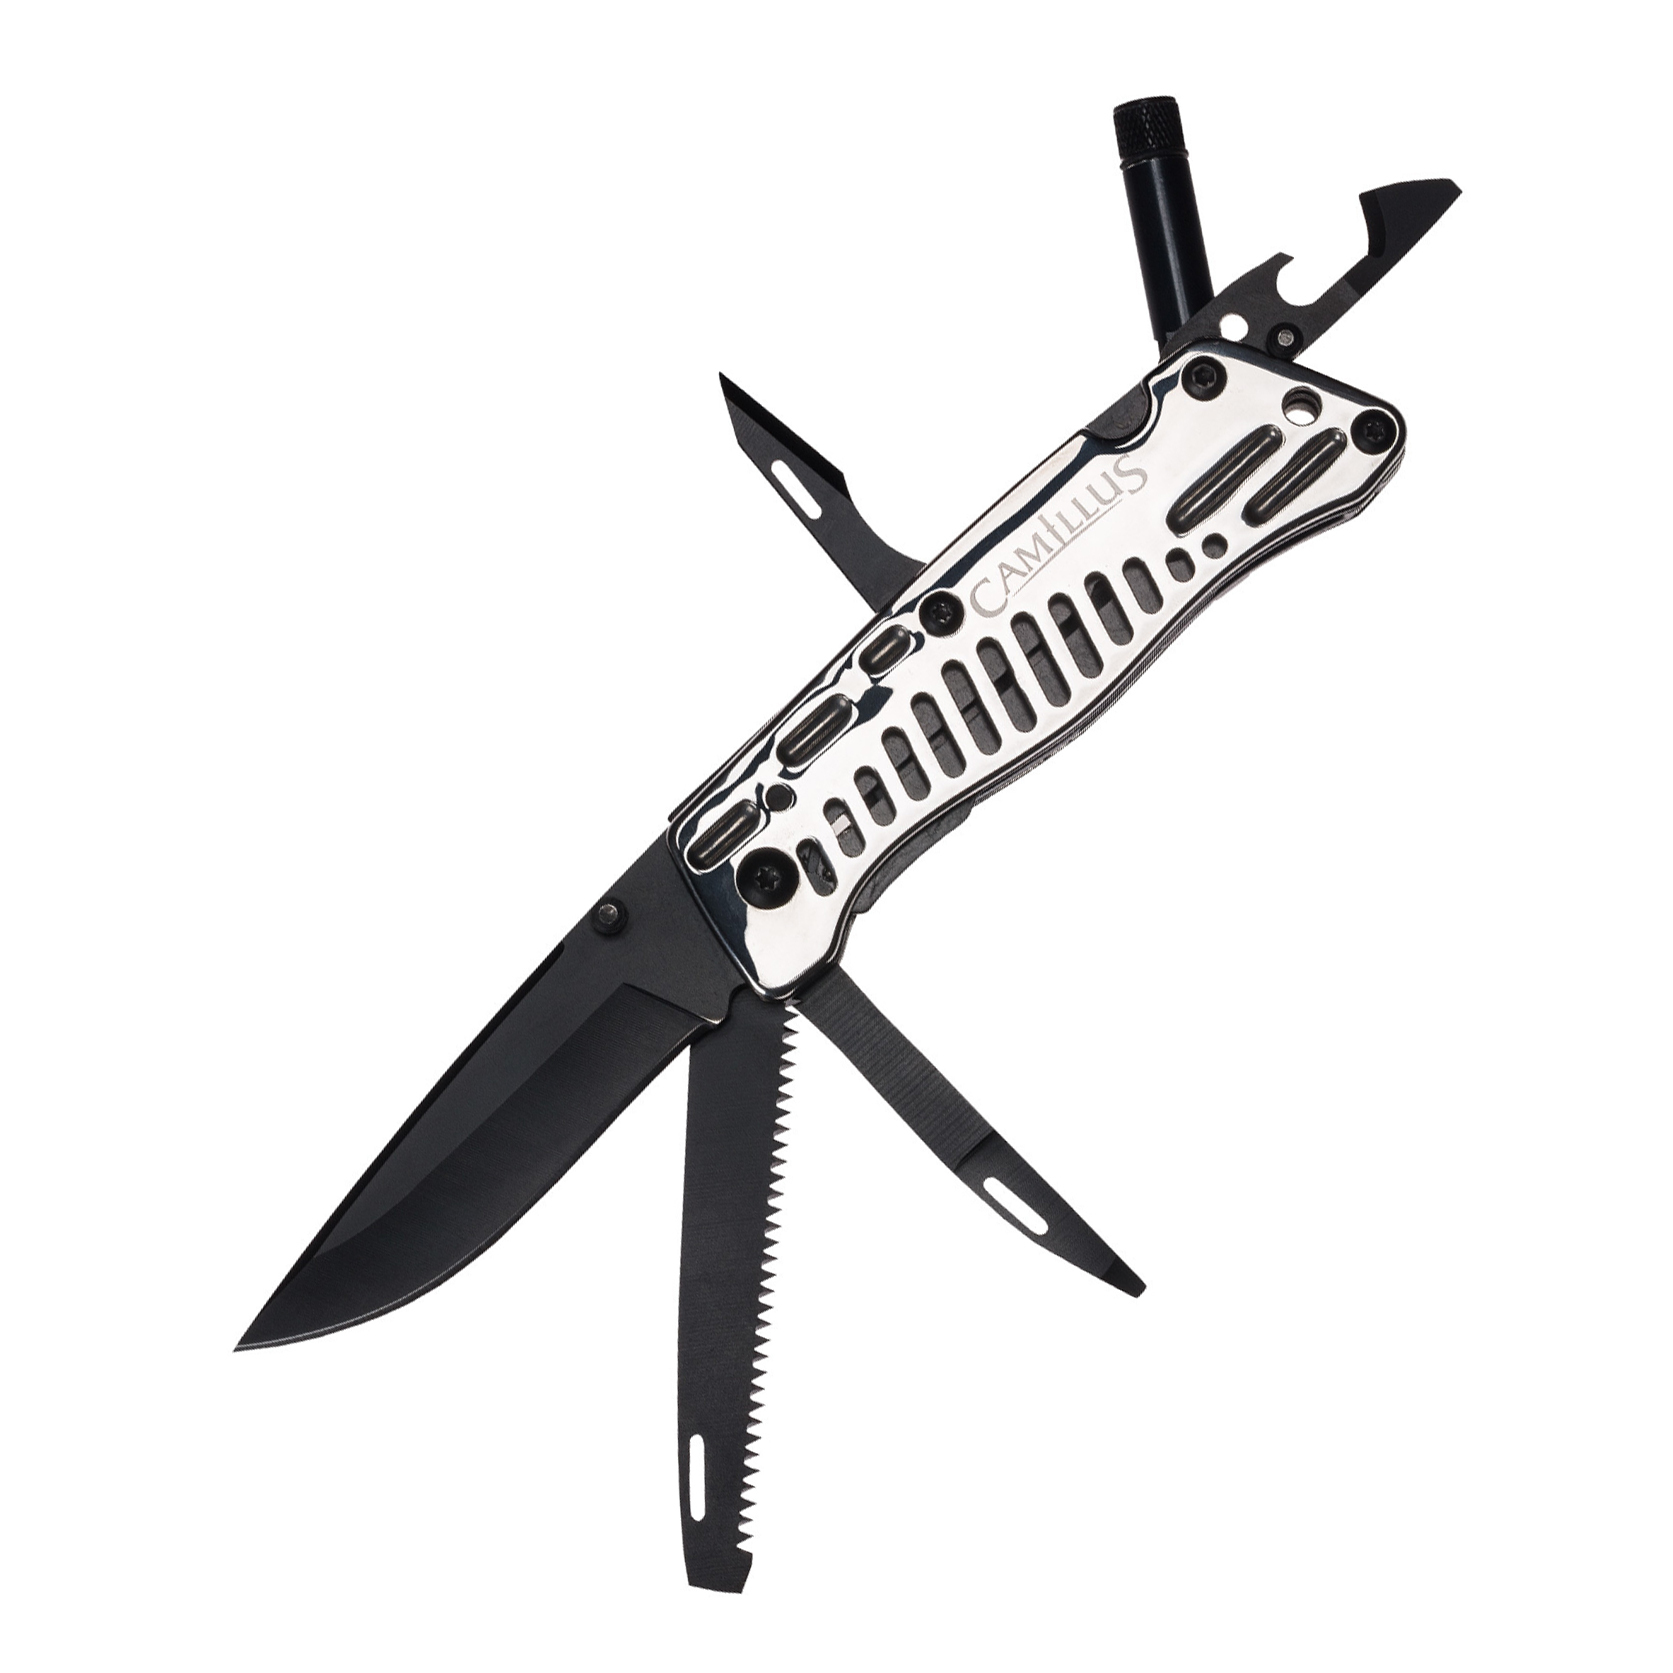 Многофункциональный нож для выживания Camillus Trekus™ Pro, сталь 440А, рукоять нержавеющая сталь